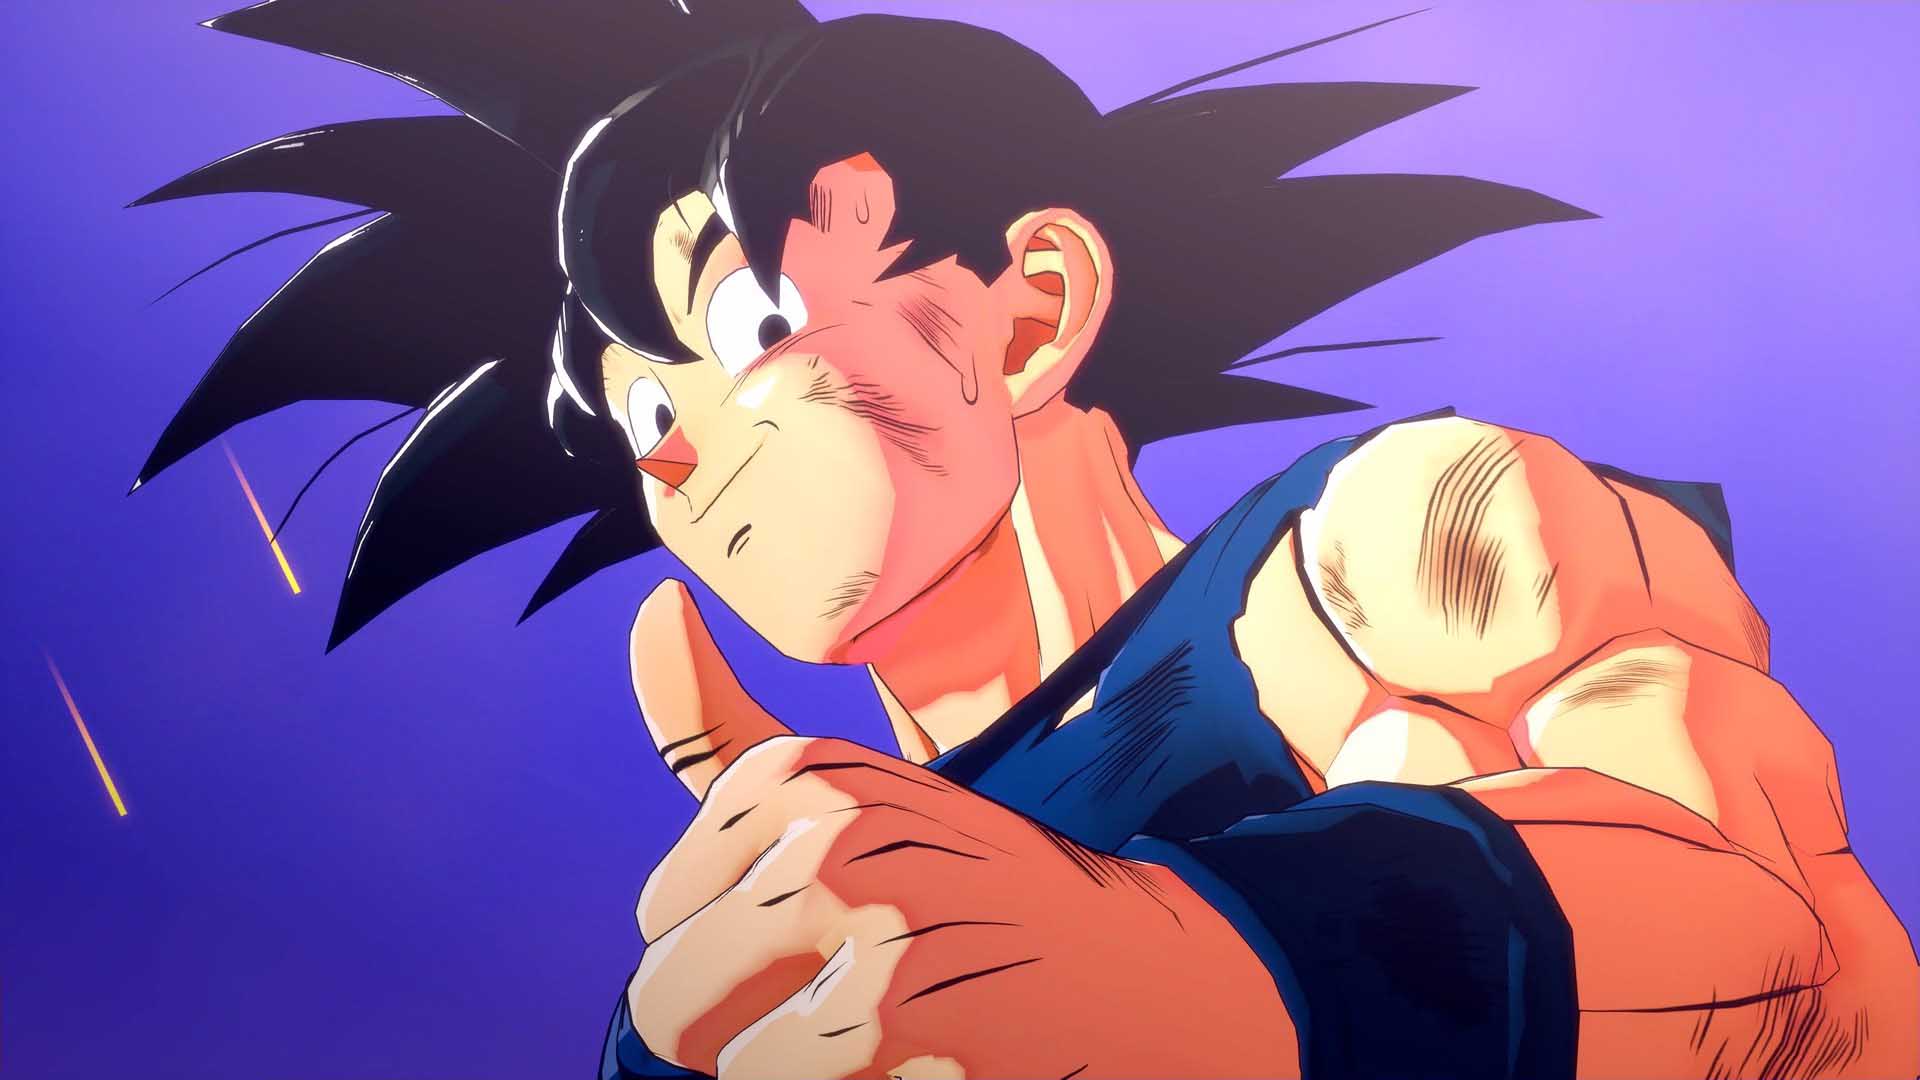 A teraz wszyscy podnosimy rączki i pomagamy Goku! | Dragon Ball Z: Kakarot